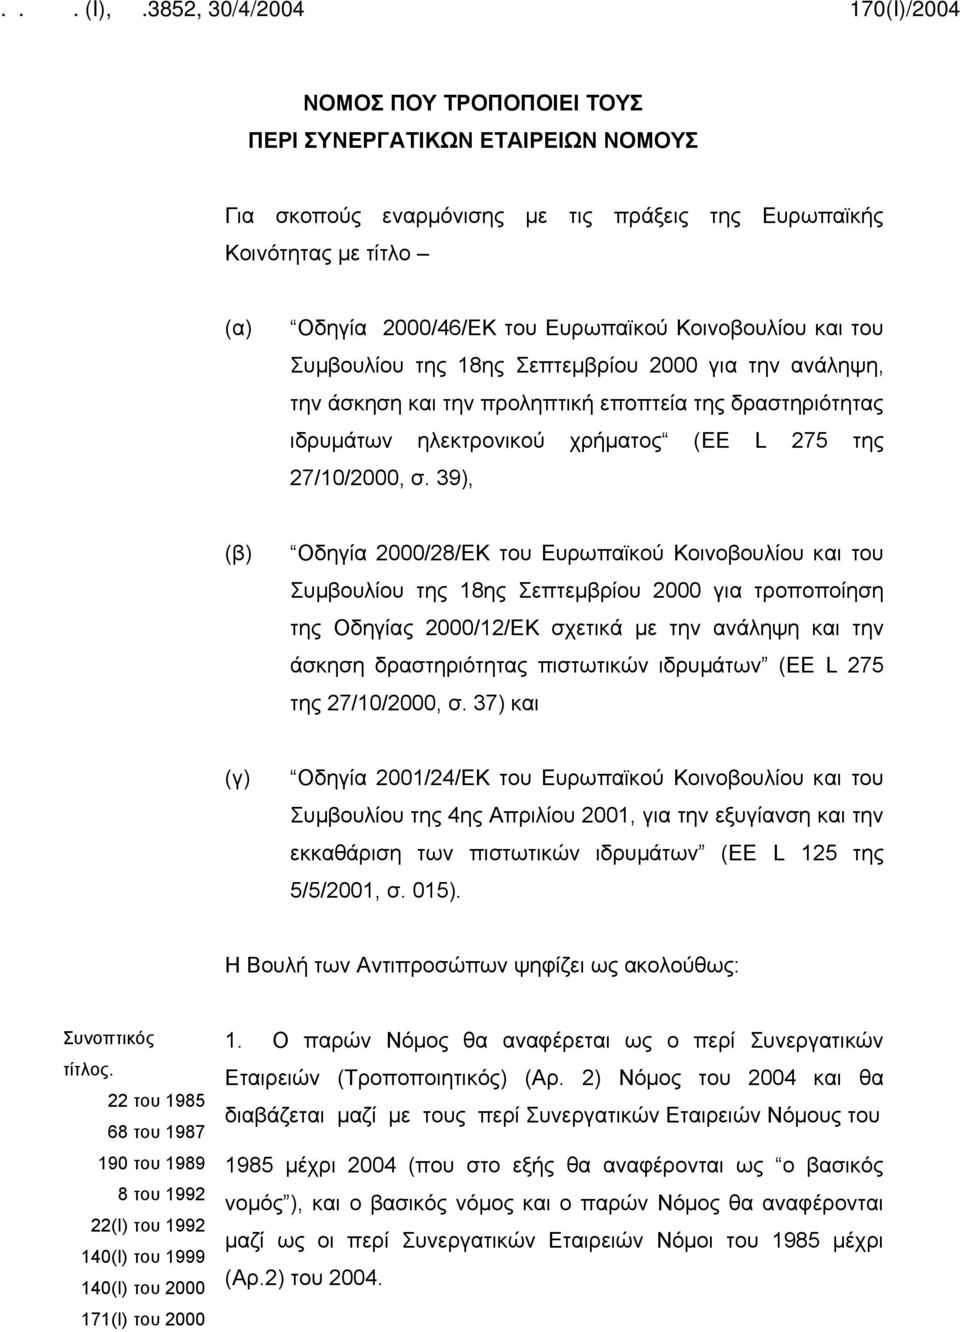 39), (β) Οδηγία 2000/28/ΕΚ του Ευρωπαϊκού Κοινοβουλίου και του Συμβουλίου της 18ης Σεπτεμβρίου 2000 για τροποποίηση της Οδηγίας 2000/12/ΕΚ σχετικά με την ανάληψη και την άσκηση δραστηριότητας